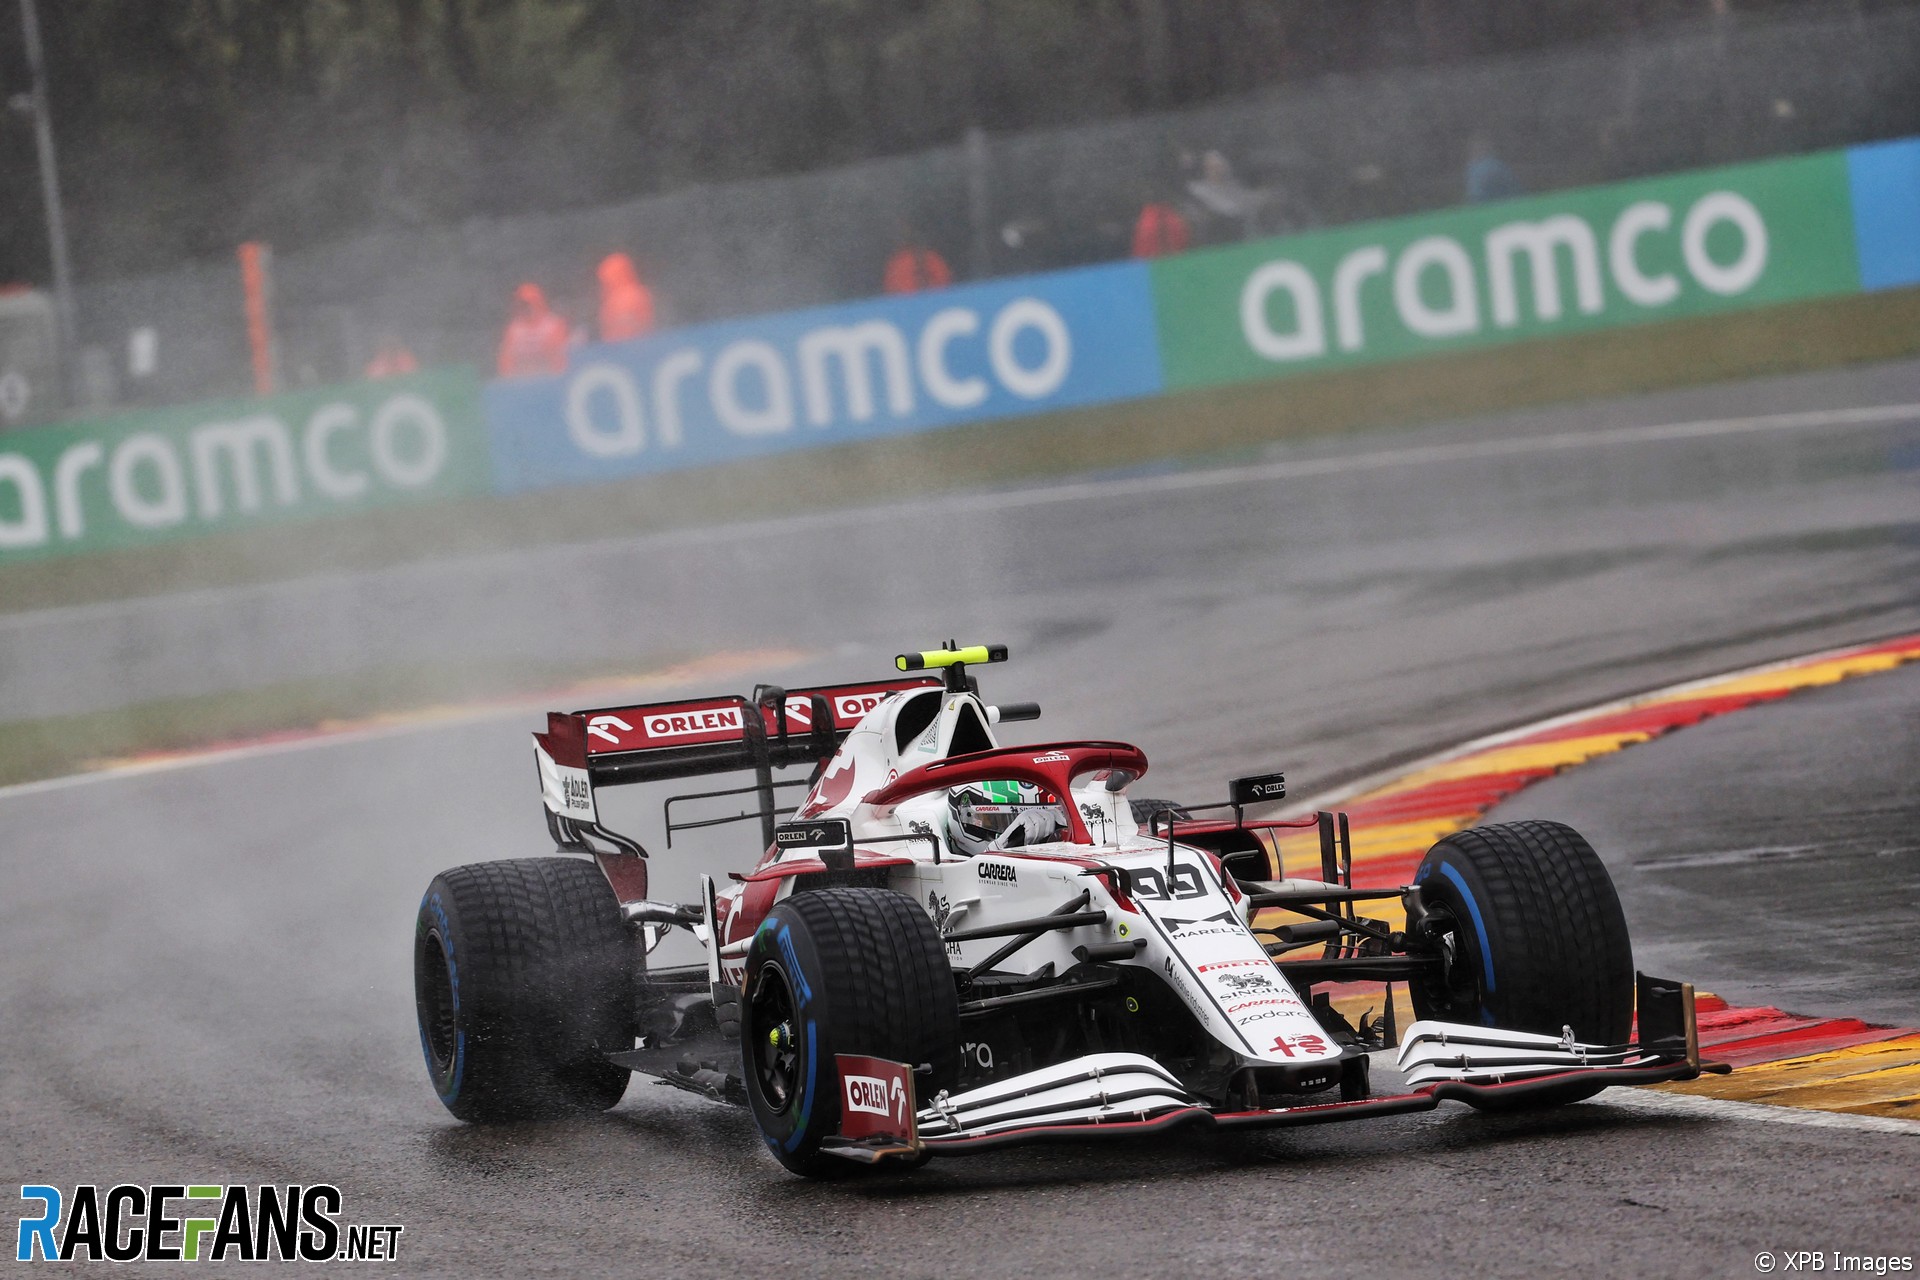 Antonio Giovinazzi, Alfa Romeo, Spa-Francorchamps, 2021